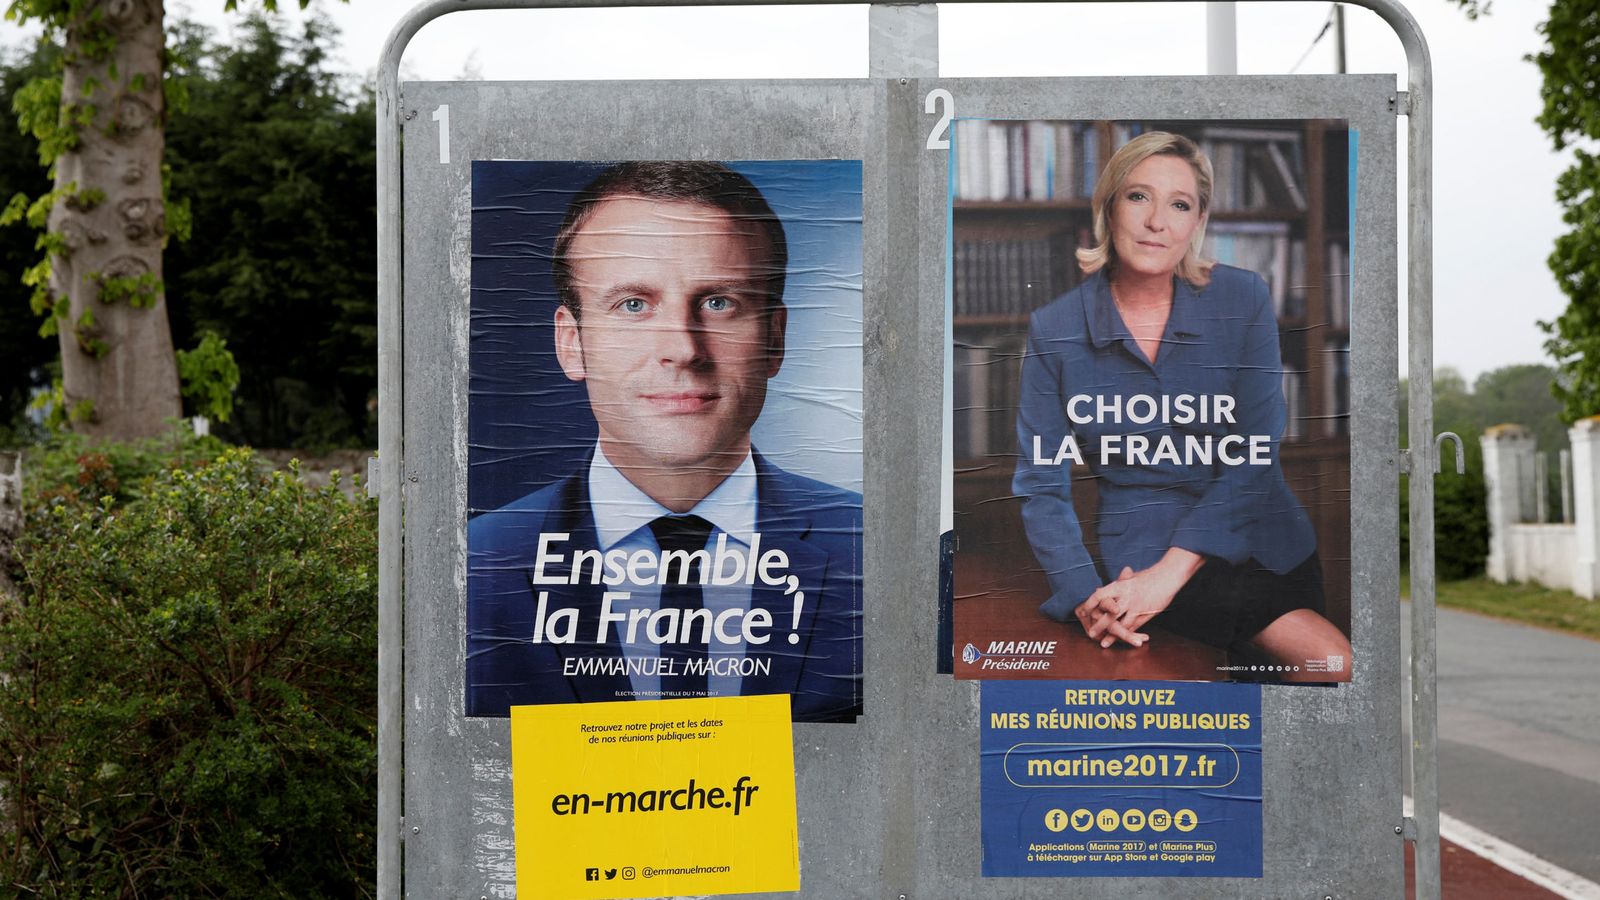 Foto: Dos carteles de los candidatos Emmanuel Macron y Marine Le Pen a la presidencia de Francia. (Reuters)